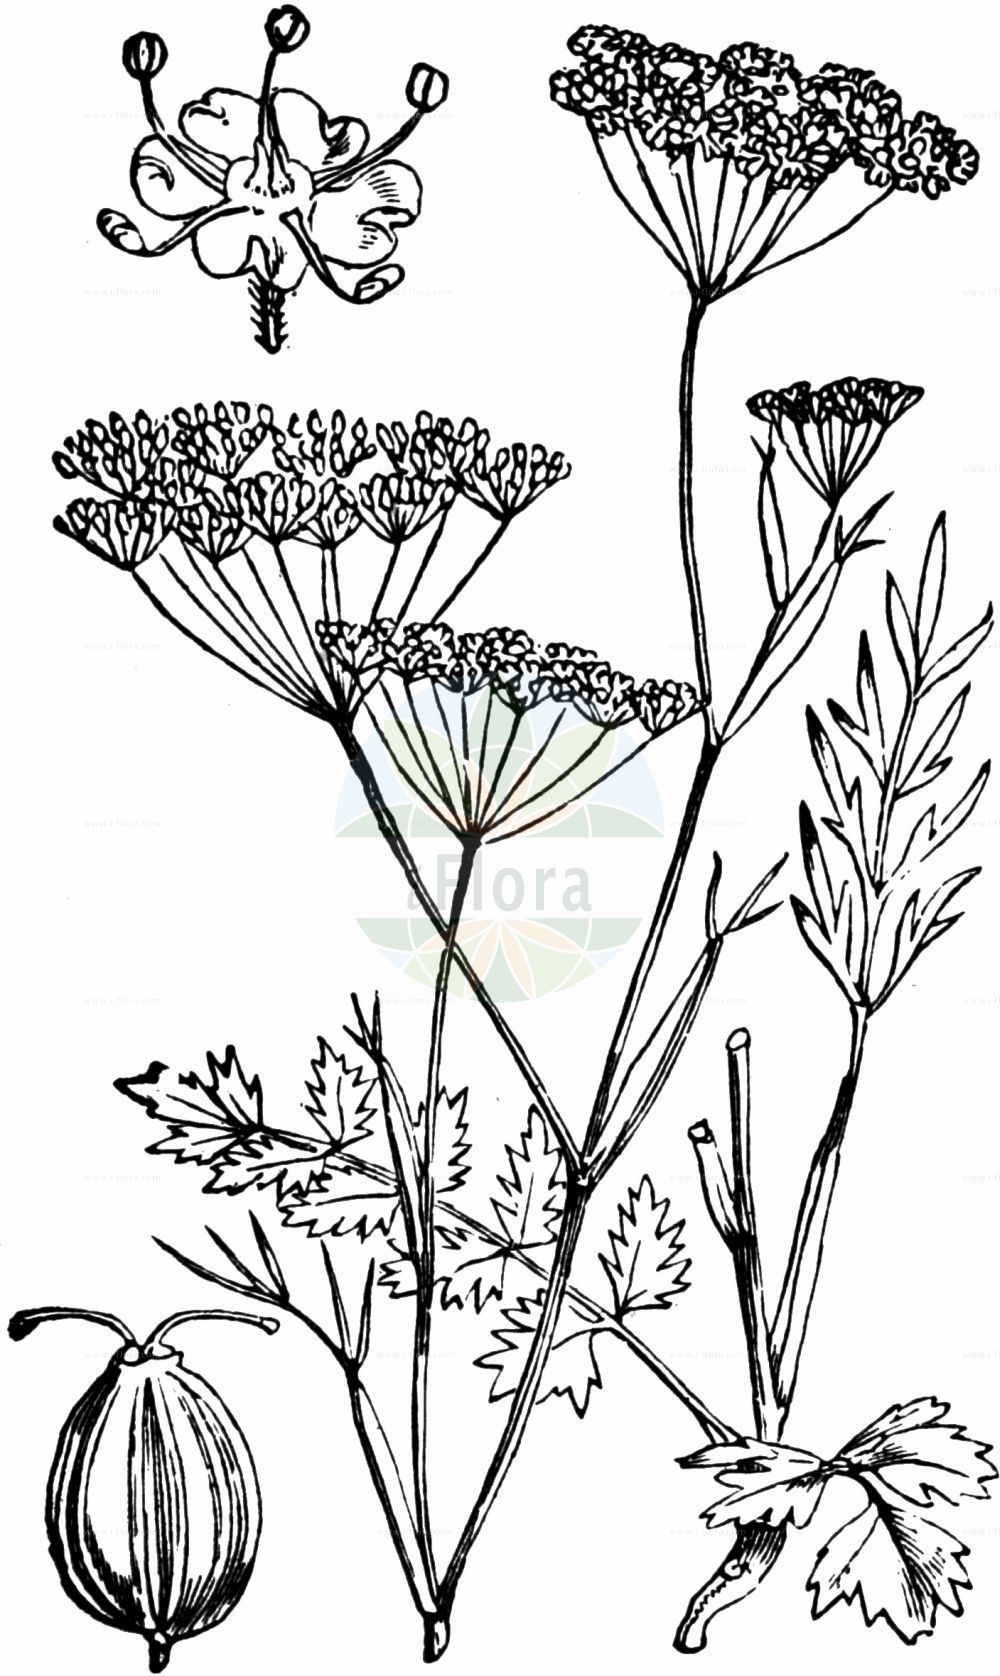 Historische Abbildung von Pimpinella saxifraga (Kleine Pimpinelle - Burnet-saxifrage). Das Bild zeigt Blatt, Bluete, Frucht und Same. ---- Historical Drawing of Pimpinella saxifraga (Kleine Pimpinelle - Burnet-saxifrage). The image is showing leaf, flower, fruit and seed.(Pimpinella saxifraga,Kleine Pimpinelle,Burnet-saxifrage,Pimpinella dissecta,Pimpinella hircina,Pimpinella saxifraga,Kleine Pimpinelle,Burnet-saxifrage,Solidstem Burnet Saxifrage,Pimpinella,Bibernelle,Burnet Saxifrage,Apiaceae,Doldengewächse,Carrot family,Blatt,Bluete,Frucht,Same,leaf,flower,fruit,seed,Fitch et al. (1880))